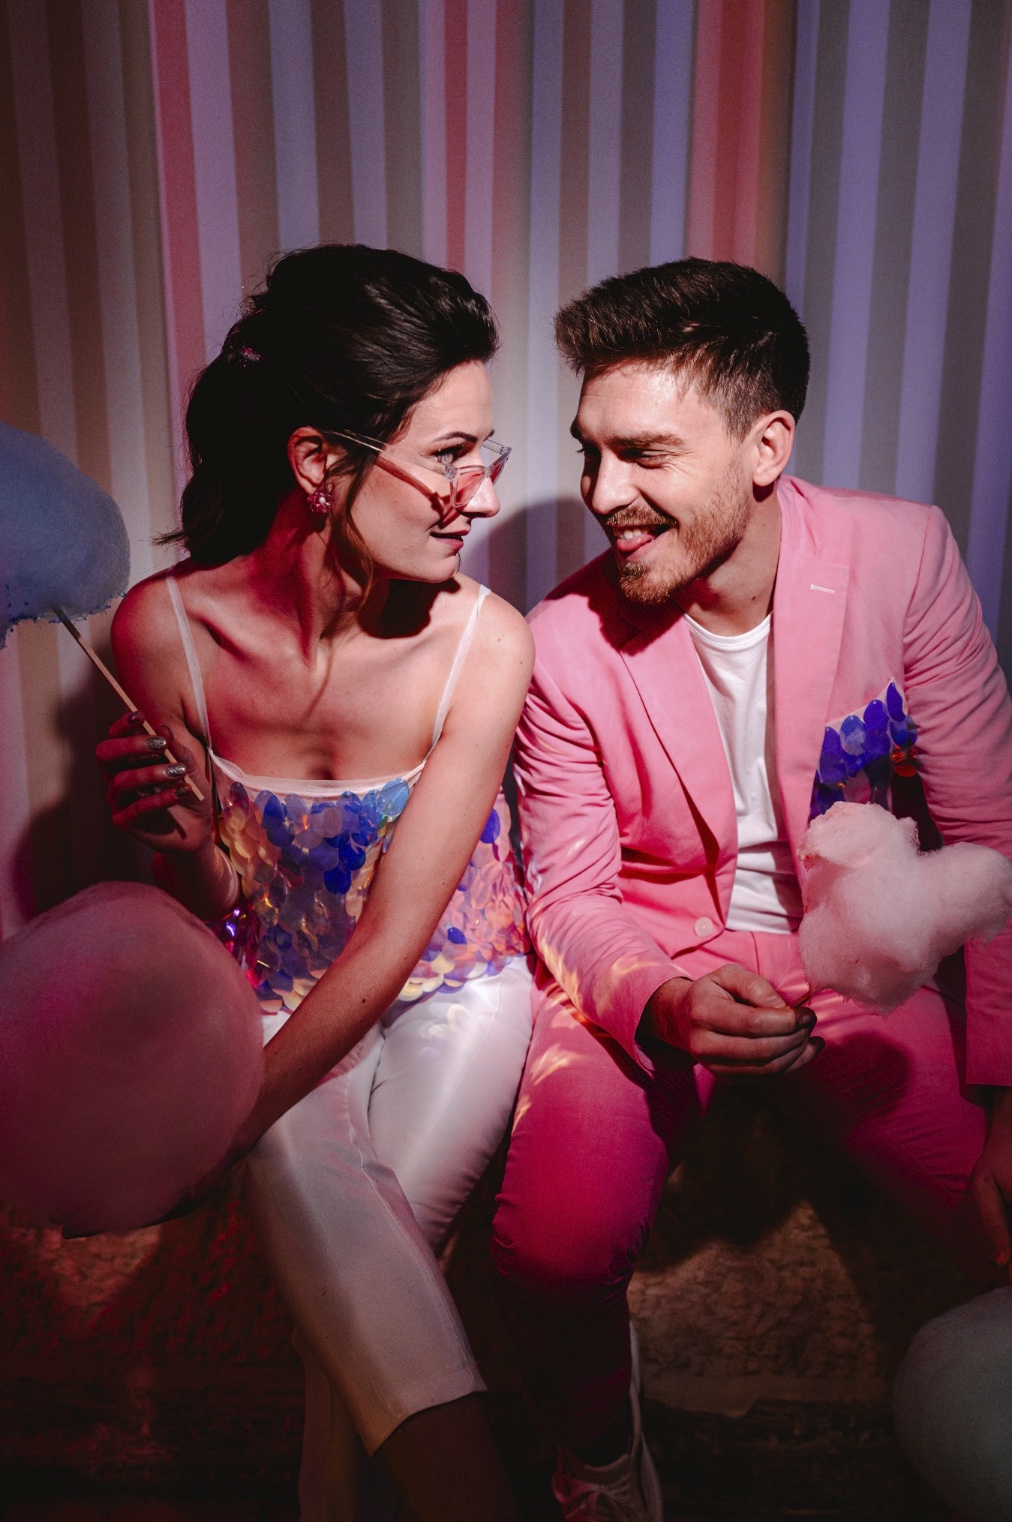 Un couple assis côte à côte, souriant et profitant d'un moment lors d'une fête. La femme tient un bâton de barbe à papa, et ils sont tous les deux habillés de manière vibrante et ludique, ce qui reflète l'atmosphère festive de la fête, avec un fond éclairé au néon dans des nuances de rose et de violet